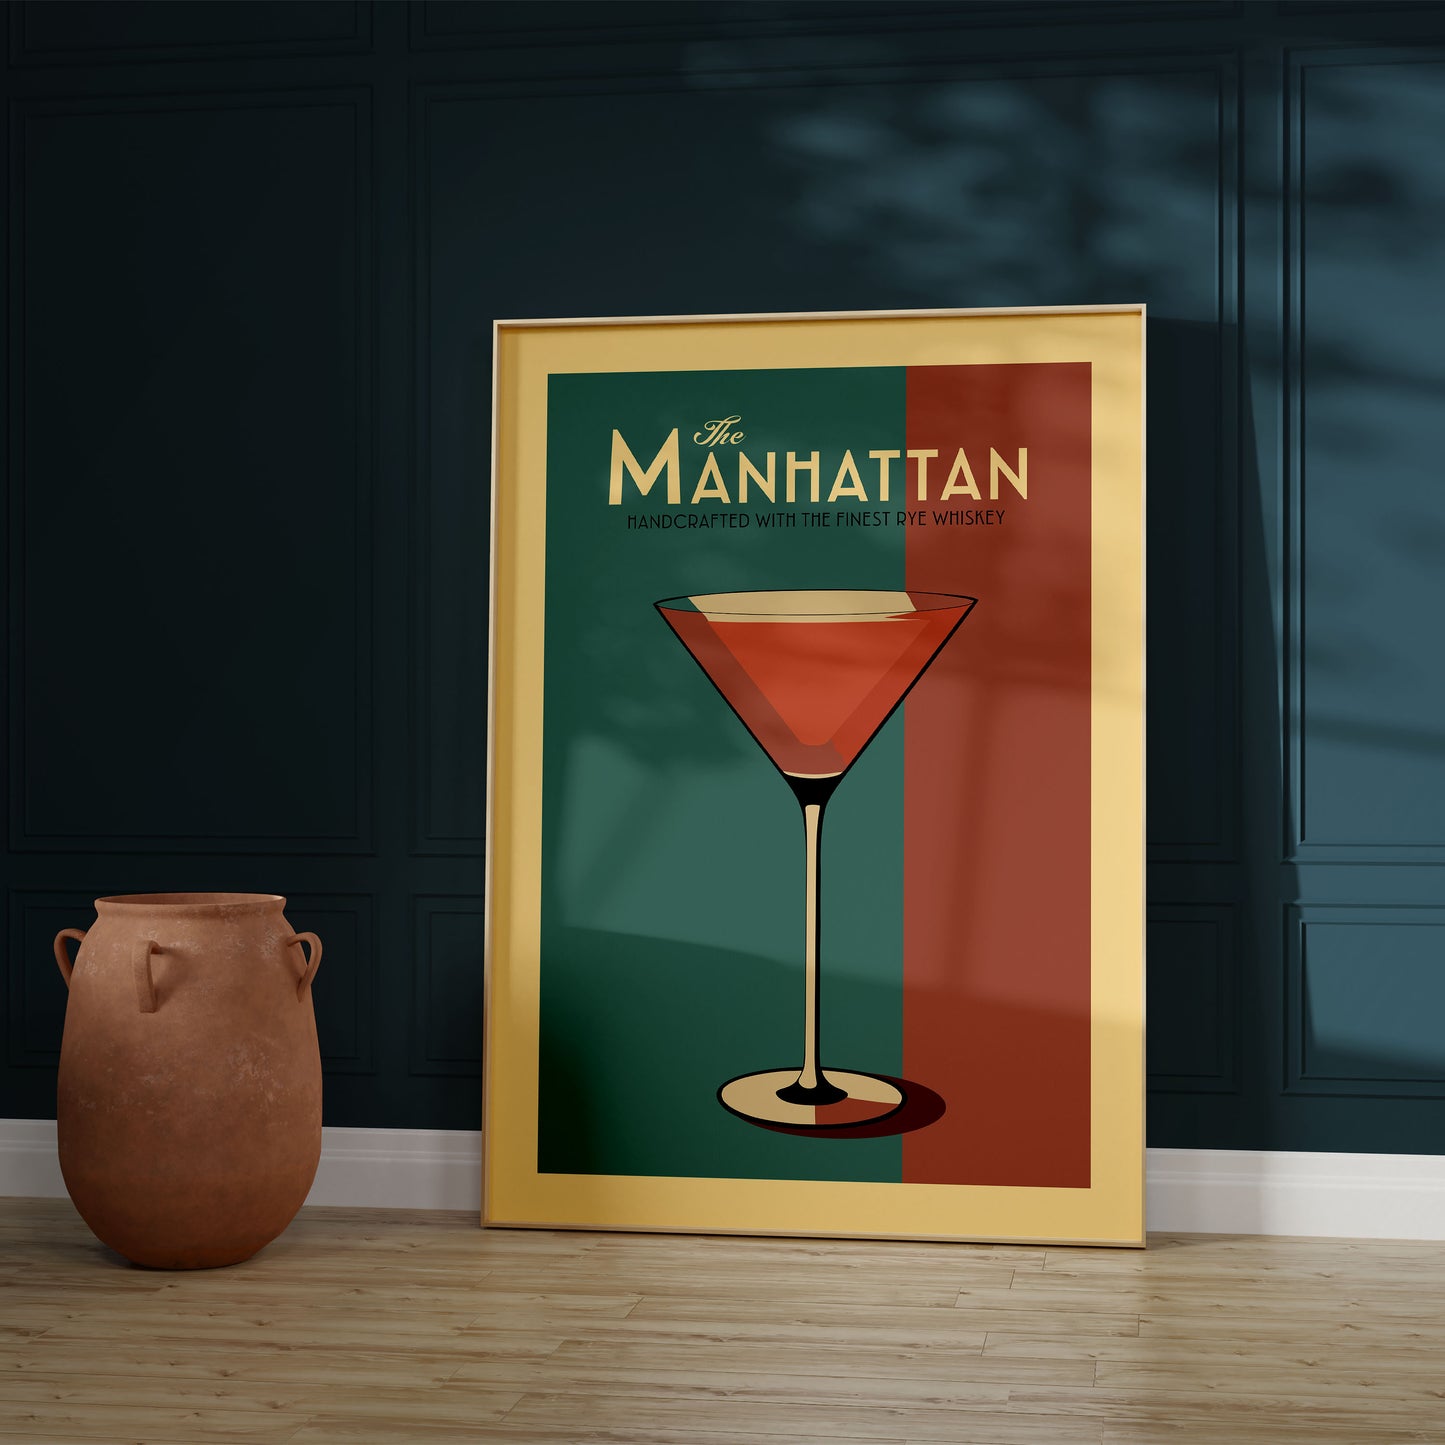 Manhattan - Vintage Cocktail Poster